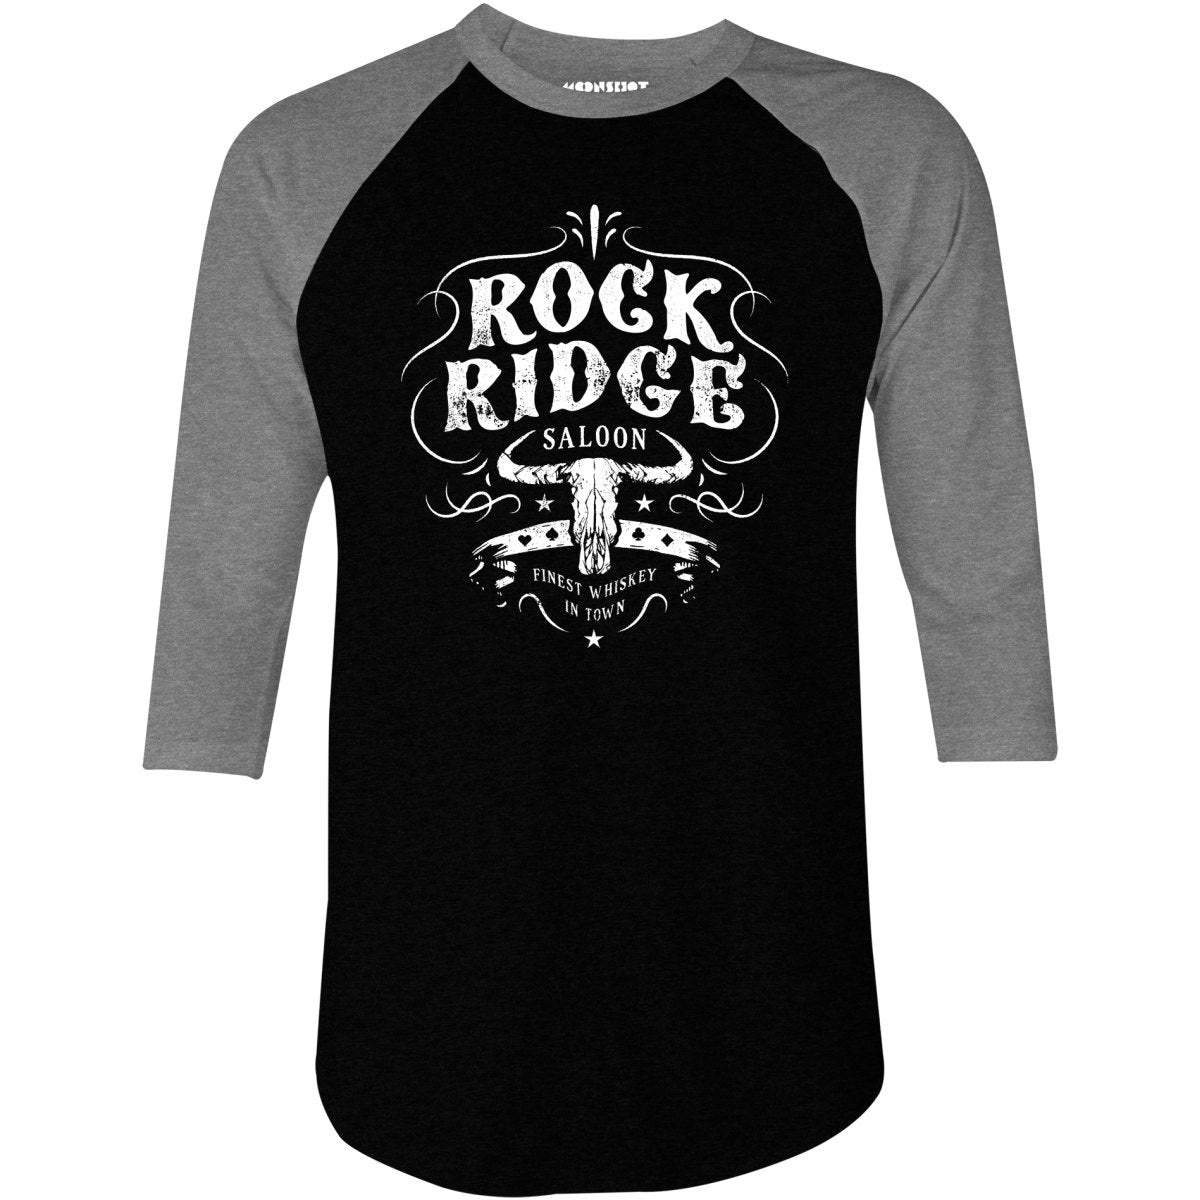 Rock Ridge Saloon - 3/4 Sleeve Raglan T-Shirt